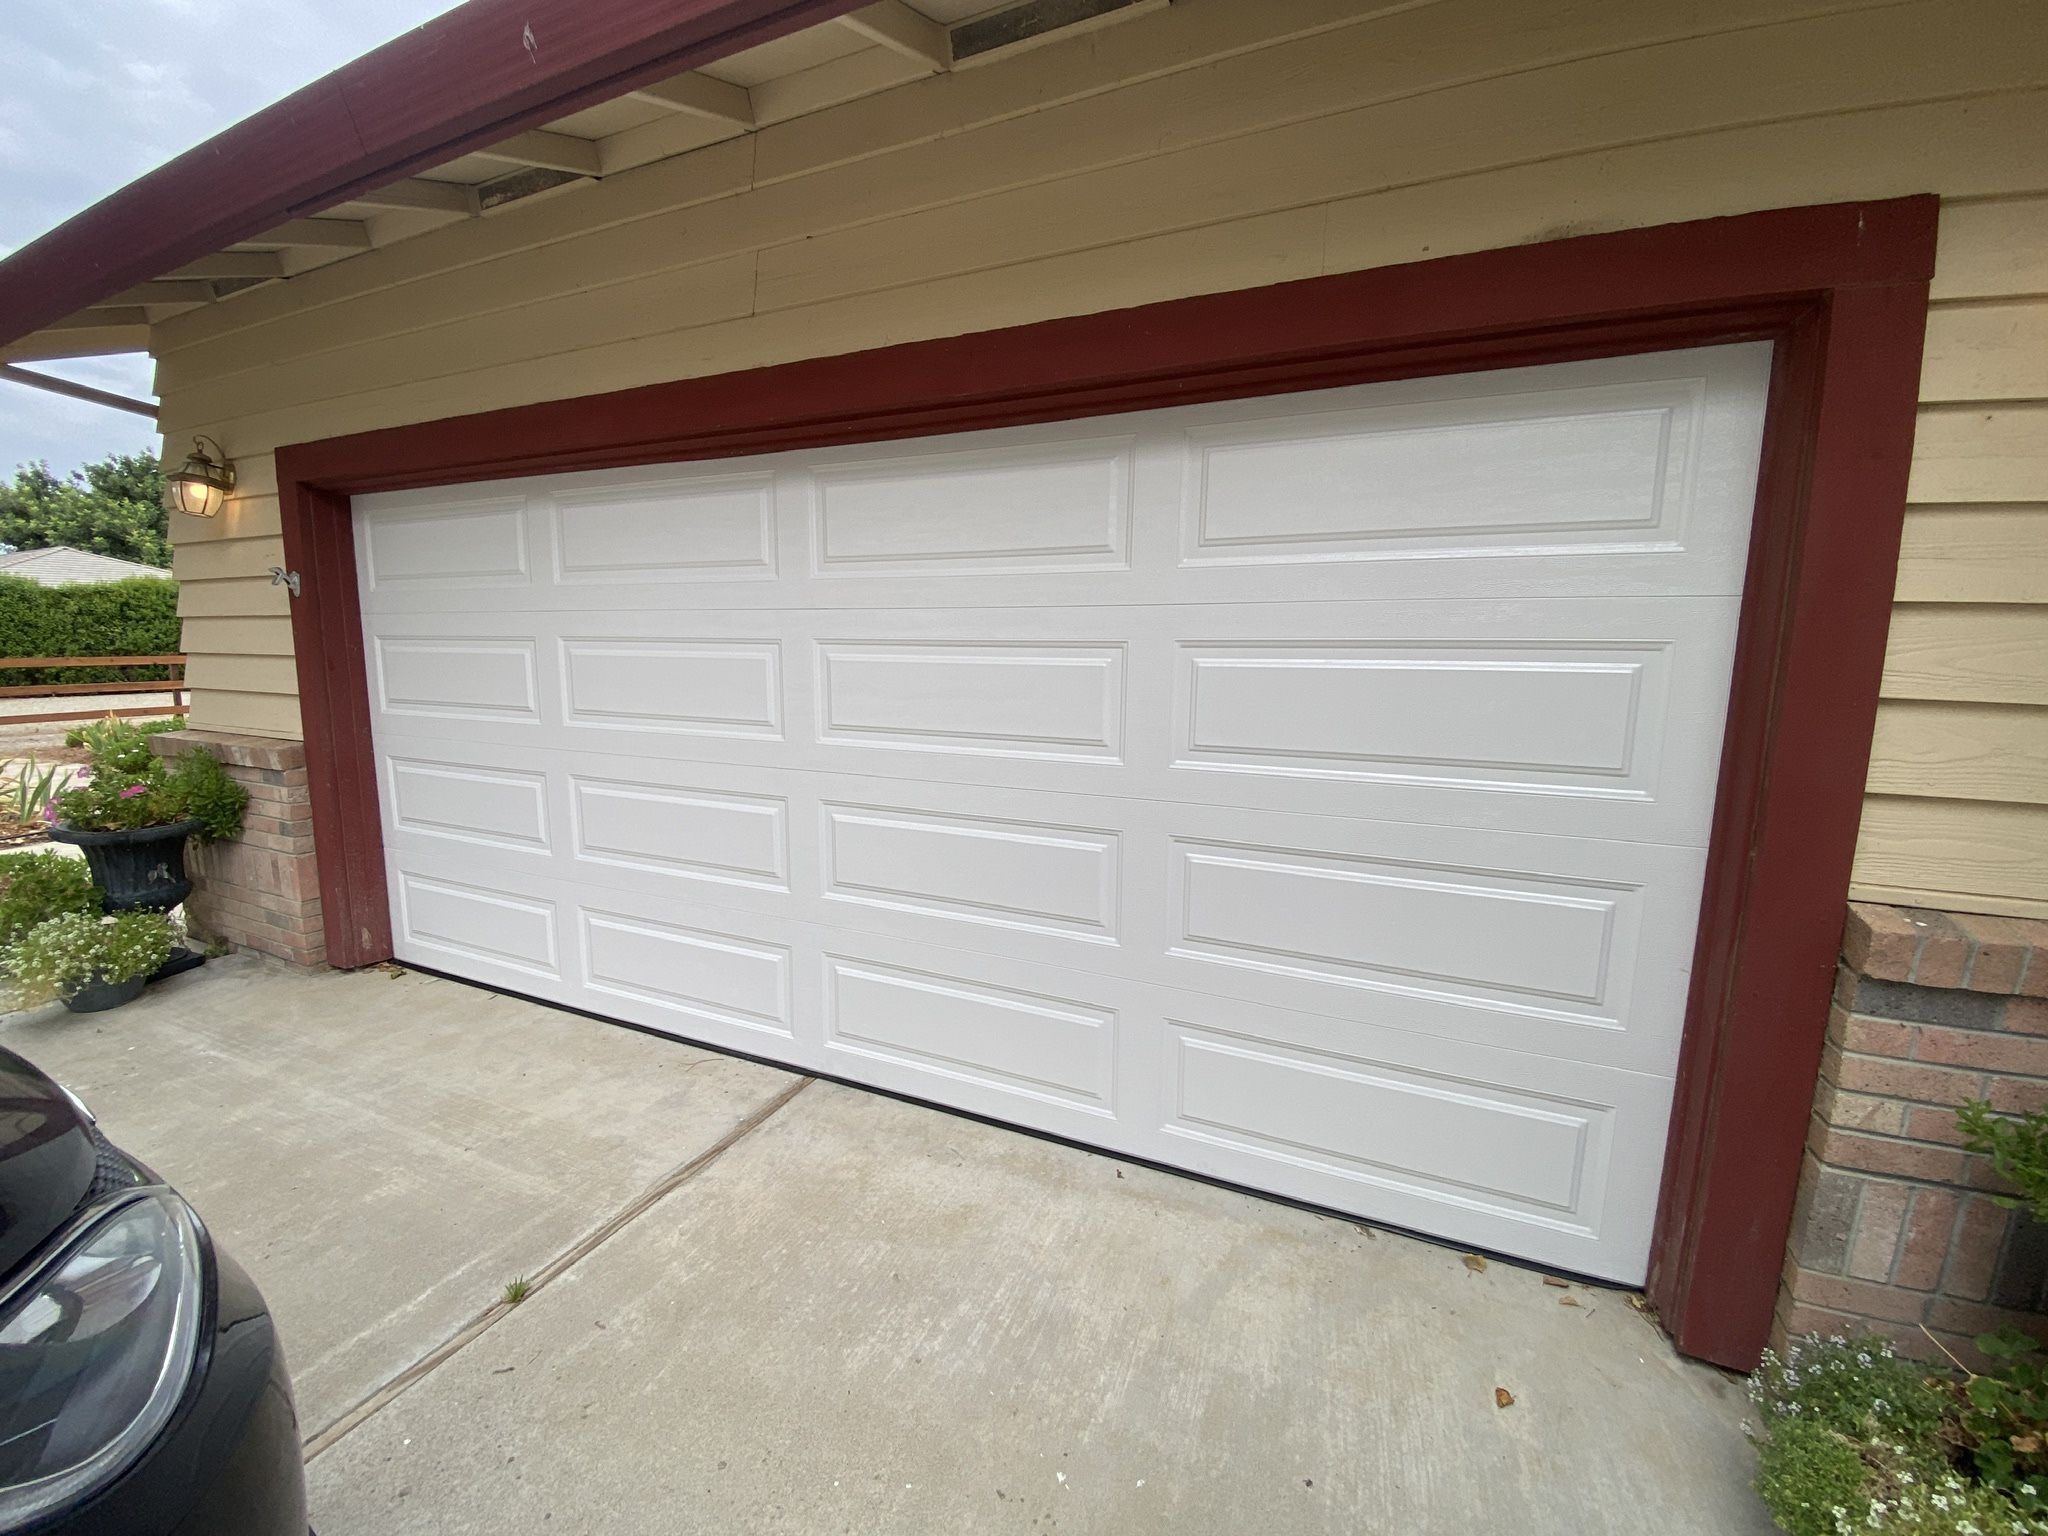  16x7 Garage Door